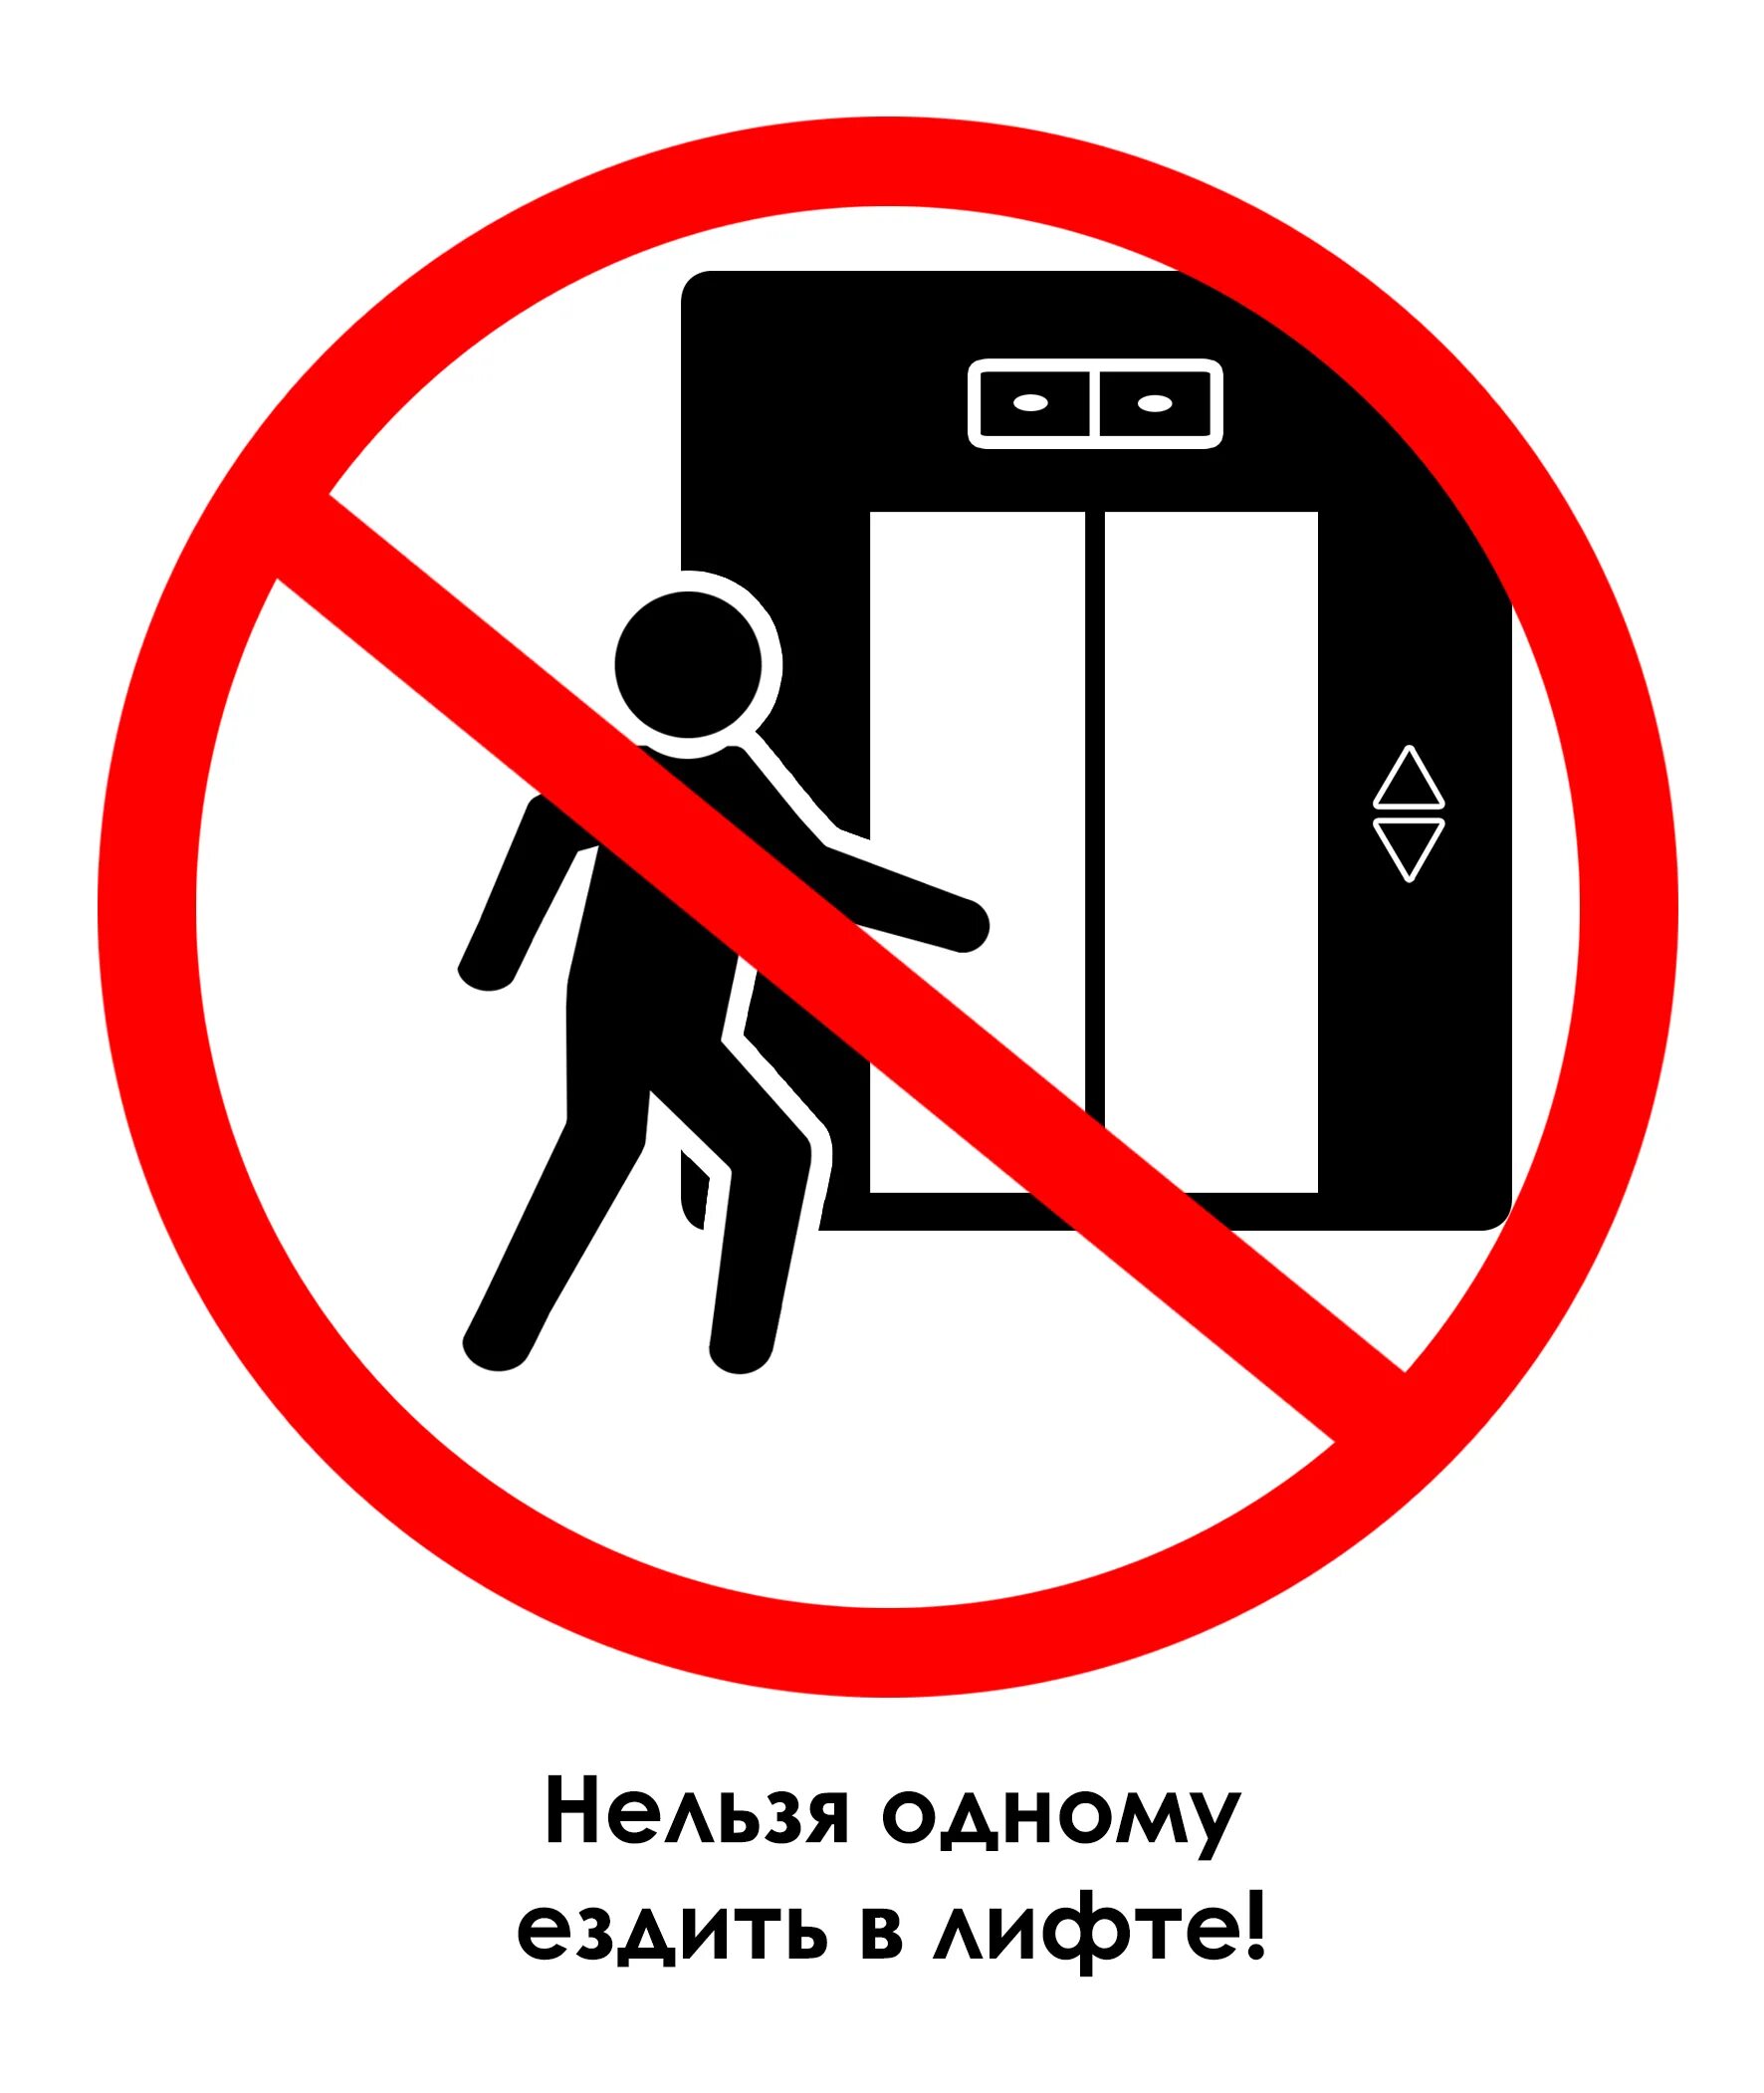 Сели что нельзя делать. Знак нельзя. Знак лифт. Знаки безопасности в лифте. Знак не прислоняться к дверям.